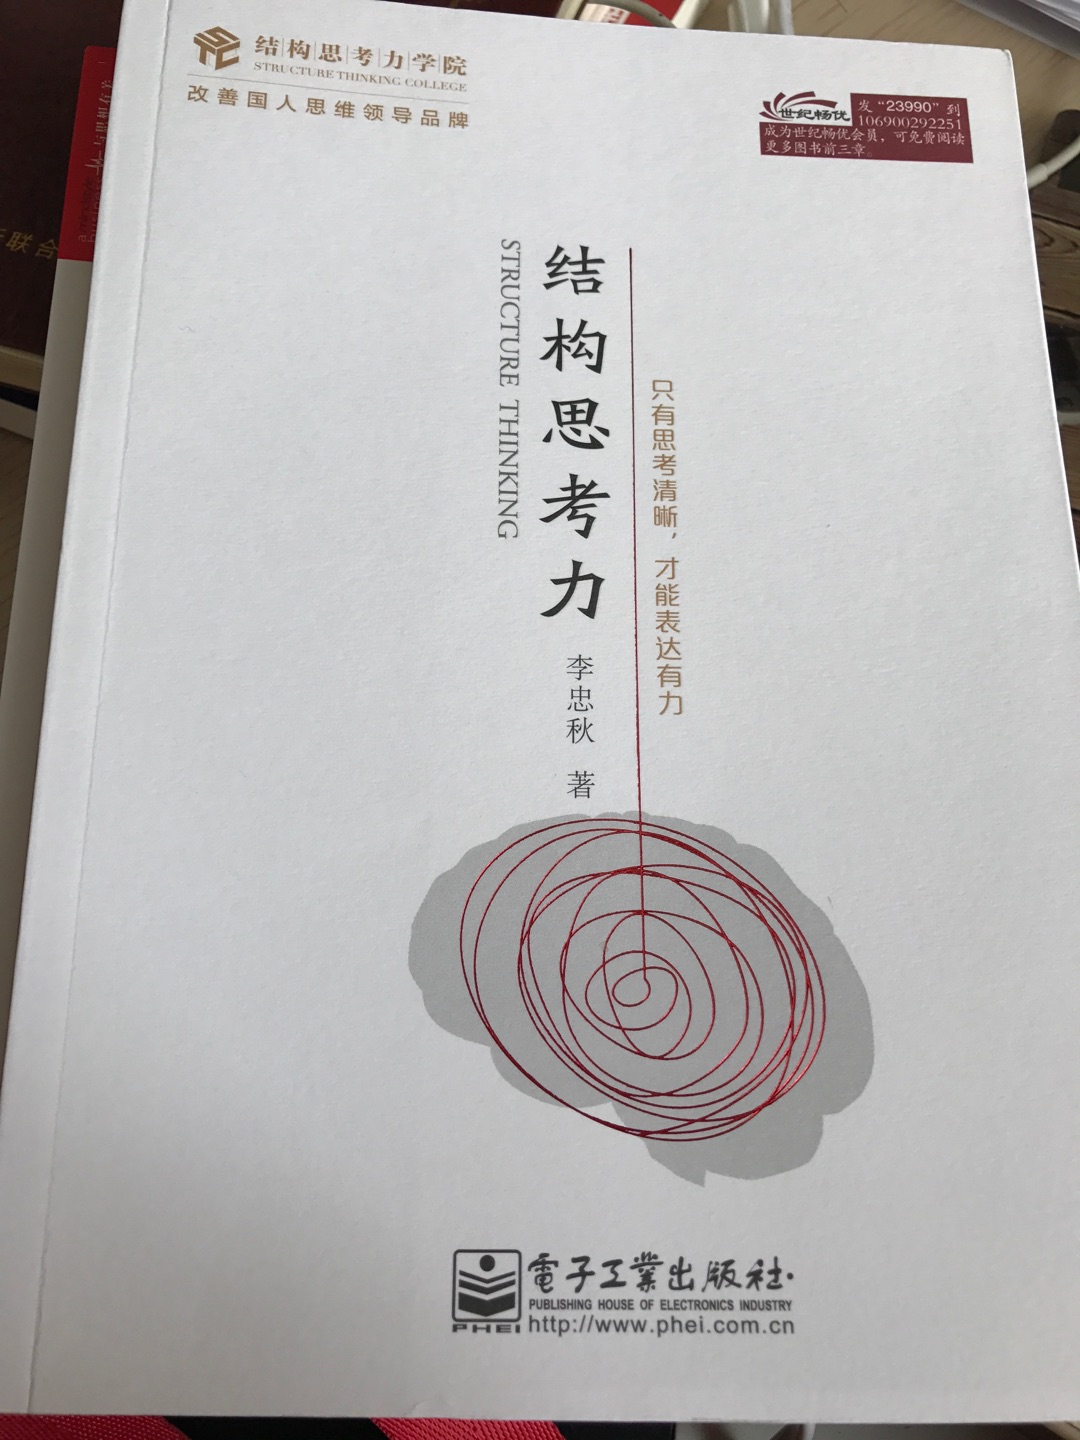 李忠秋作者是结构化在中国的系列书籍顶尖倡导者，期待有收获